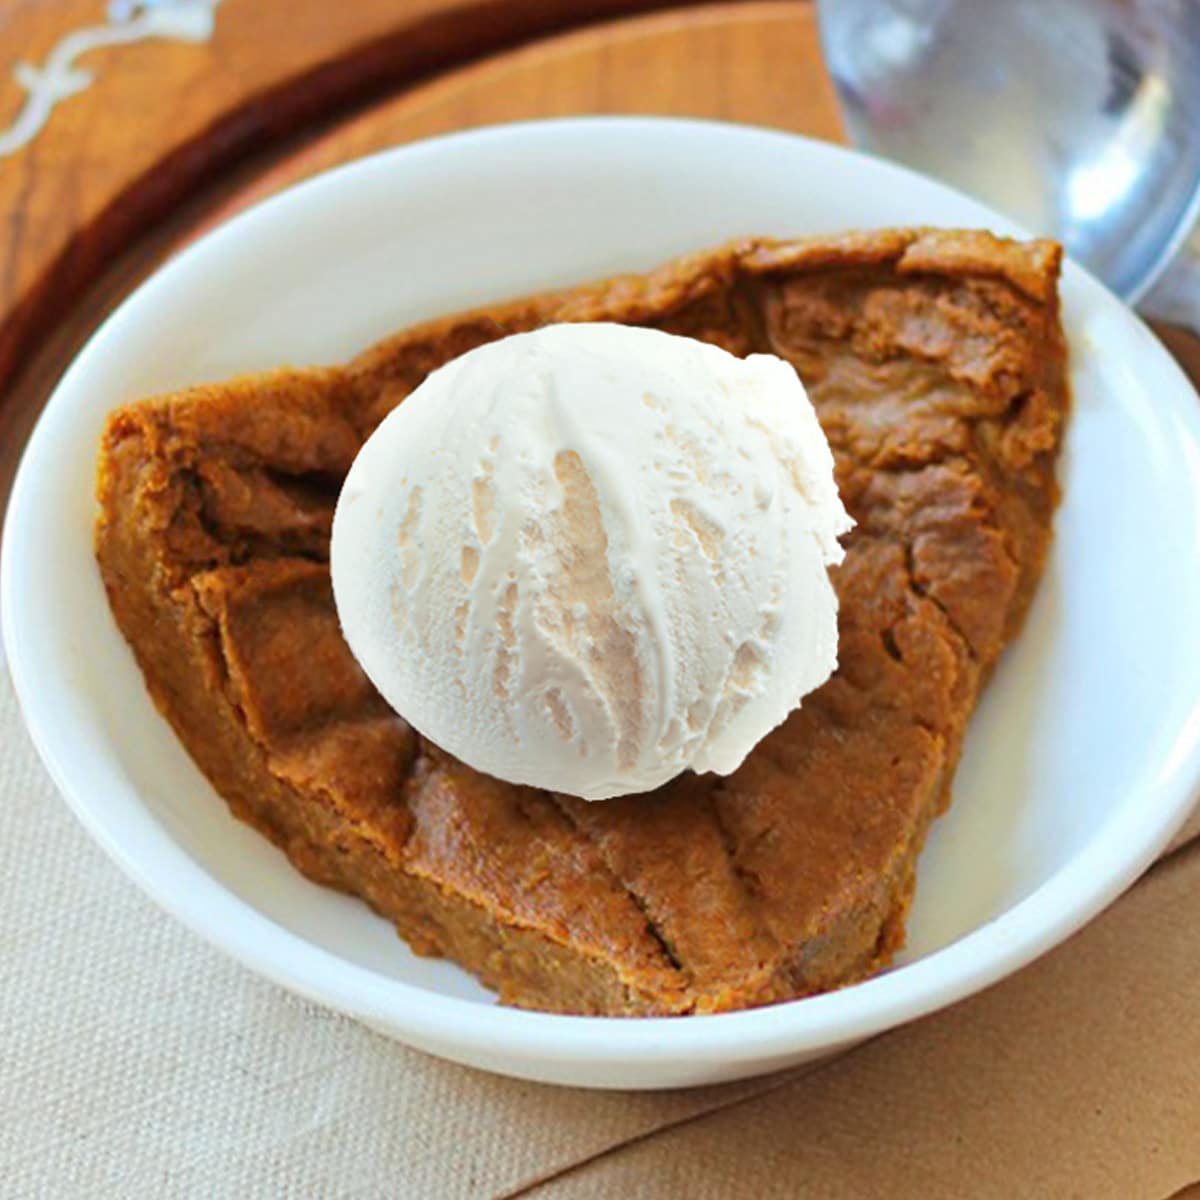 Crustless Pumpkin Pie - The Best Original Recipe!